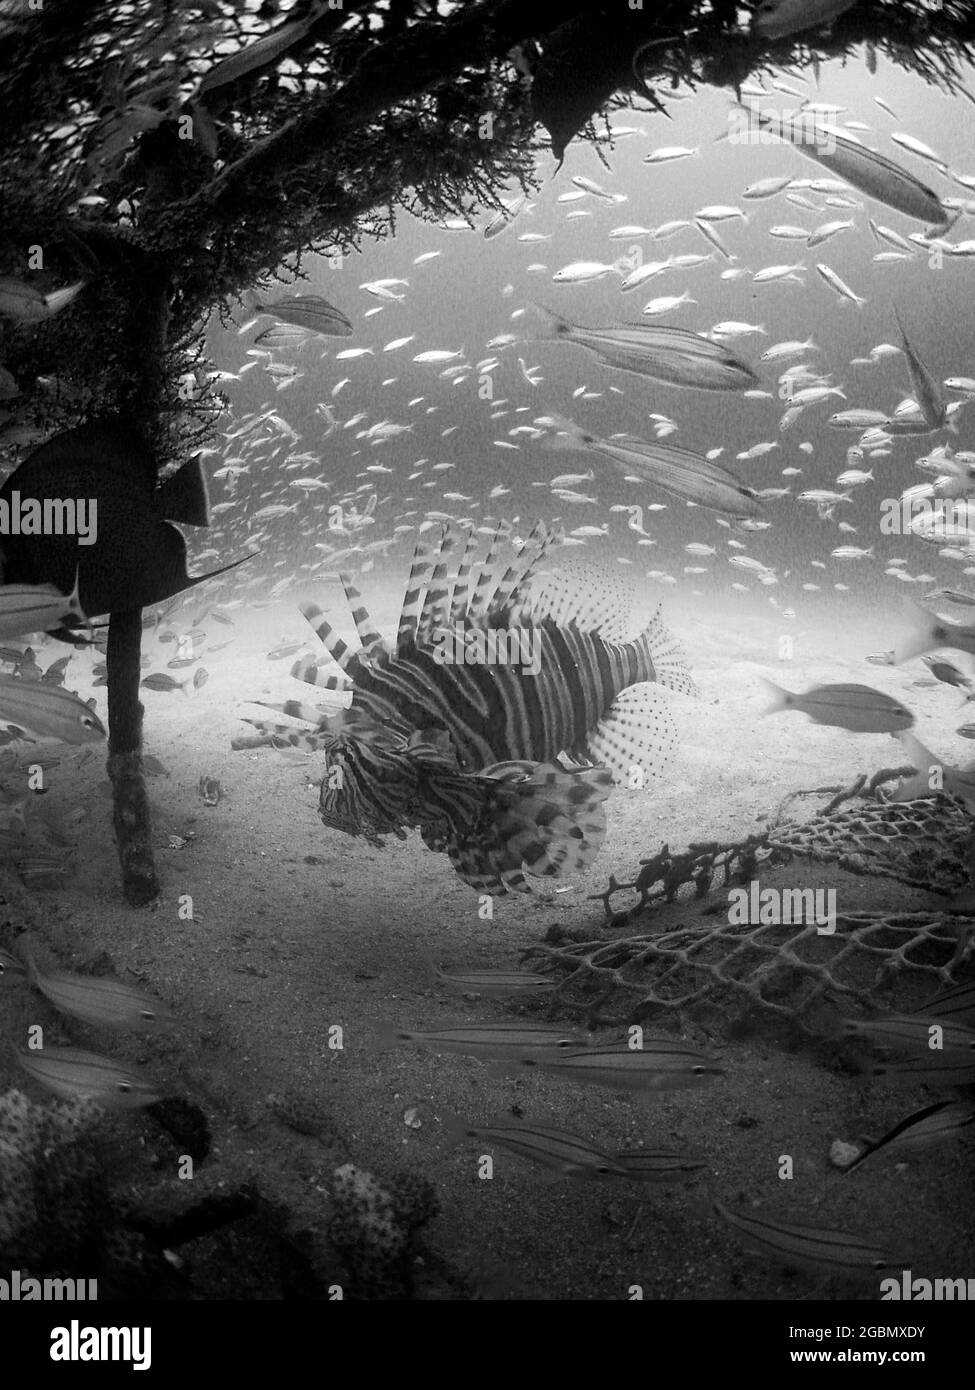 Prise de vue verticale en niveaux de gris des poissons exotiques capturés sous l'eau Banque D'Images